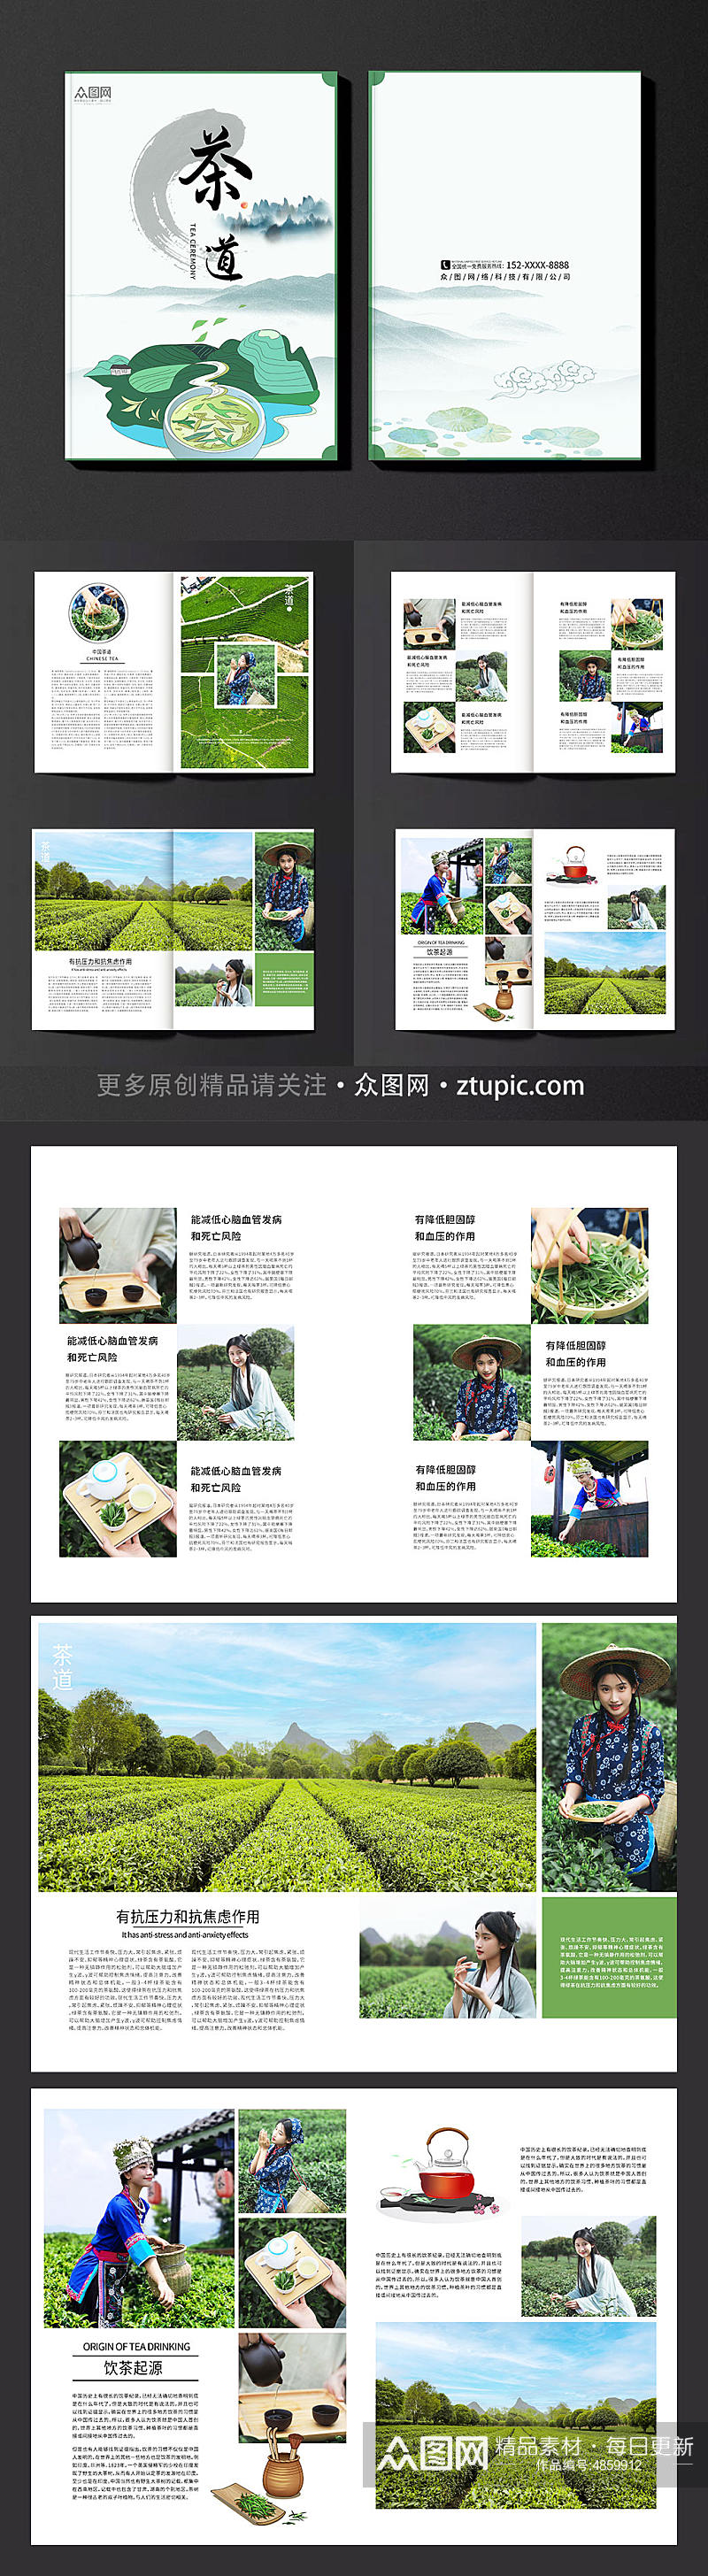 简约大气茶园采茶项目茶文化宣传画册素材